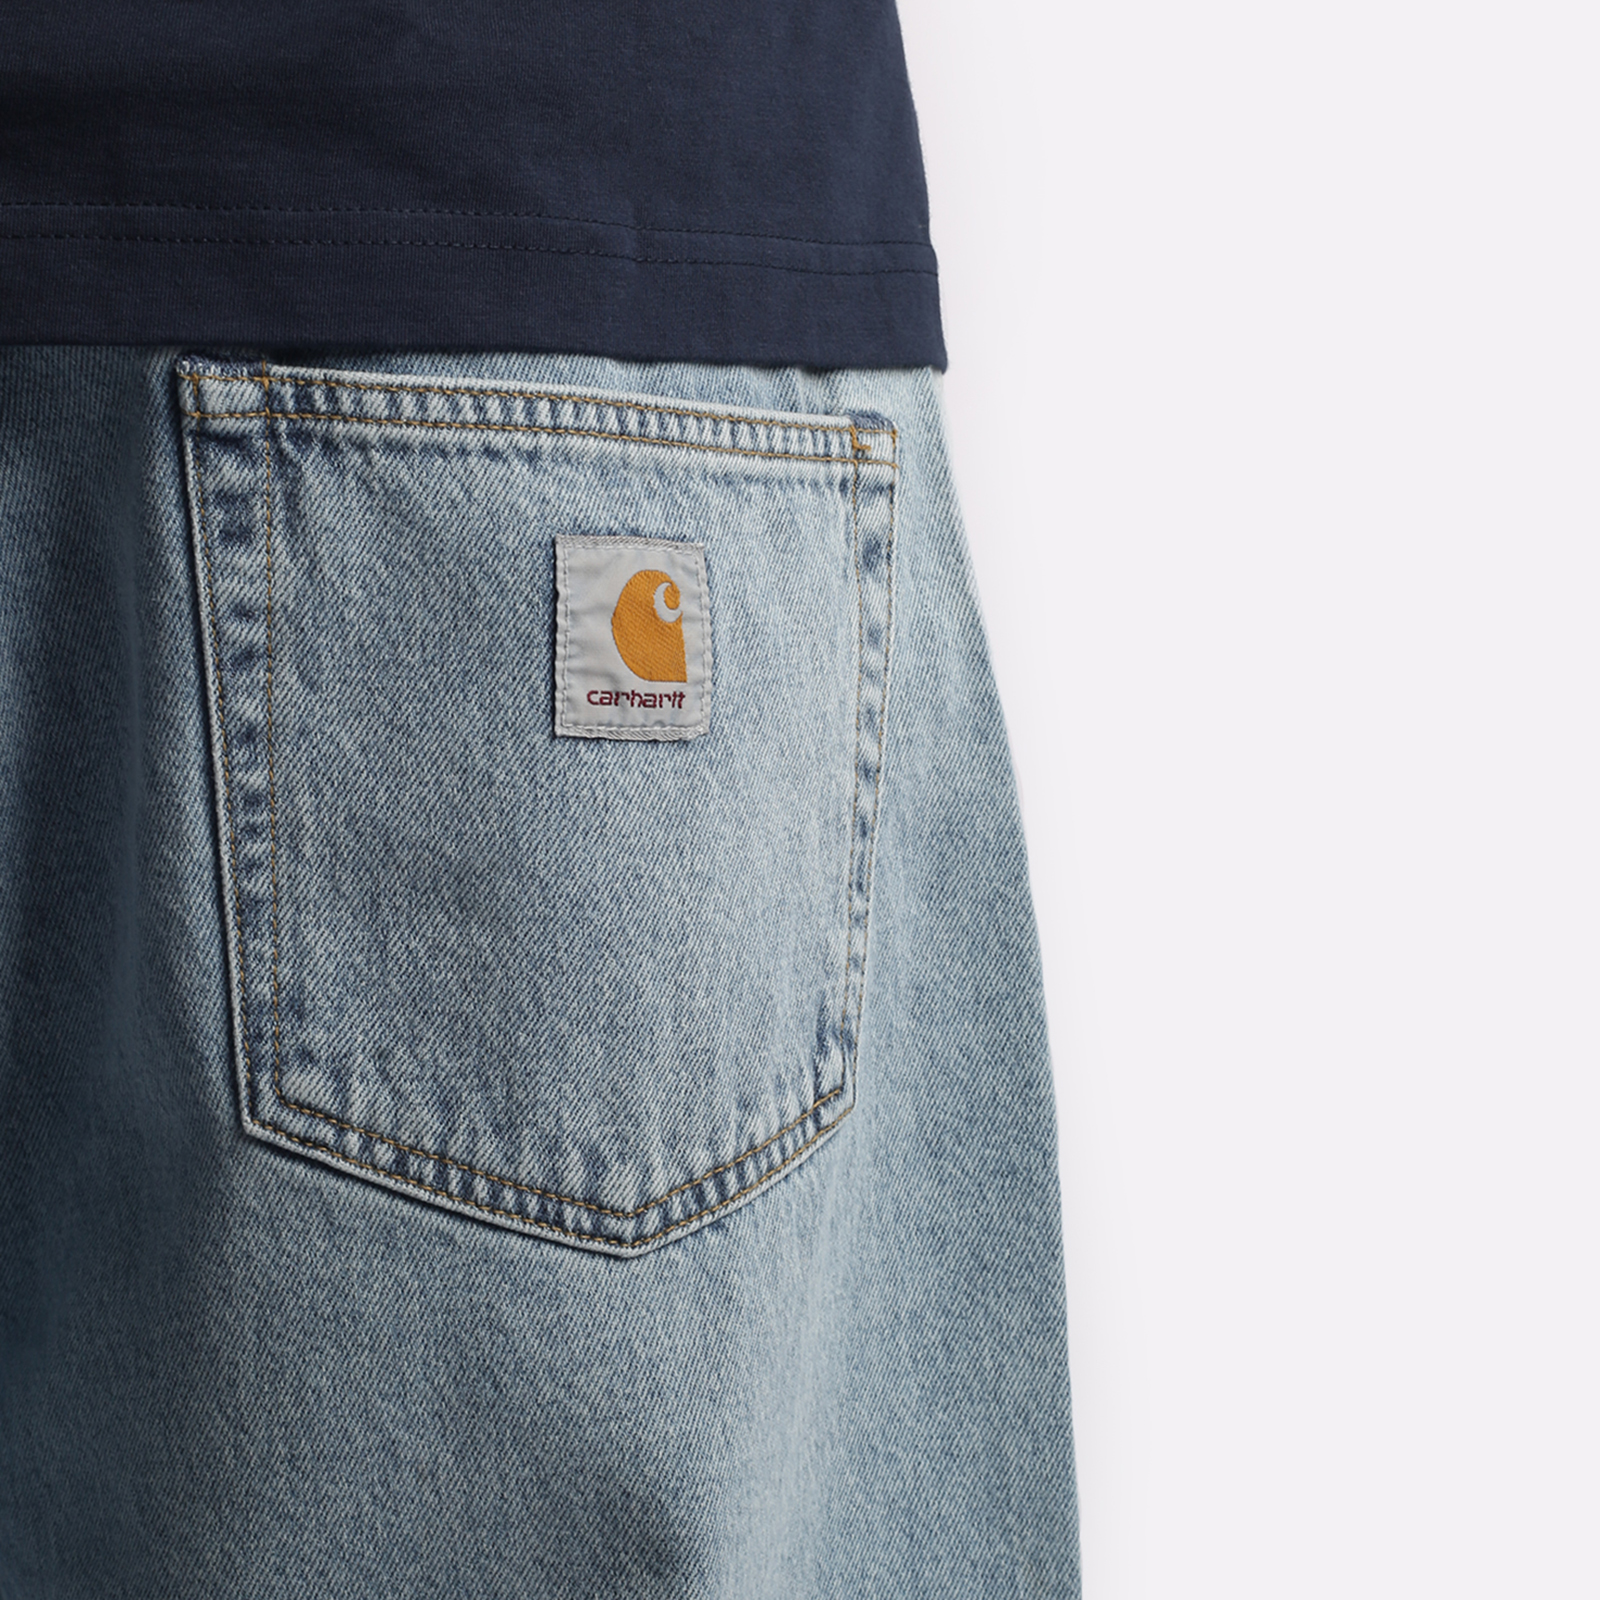 мужские брюки Carhartt WIP Robertson  (I030468-blue)  - цена, описание, фото 3